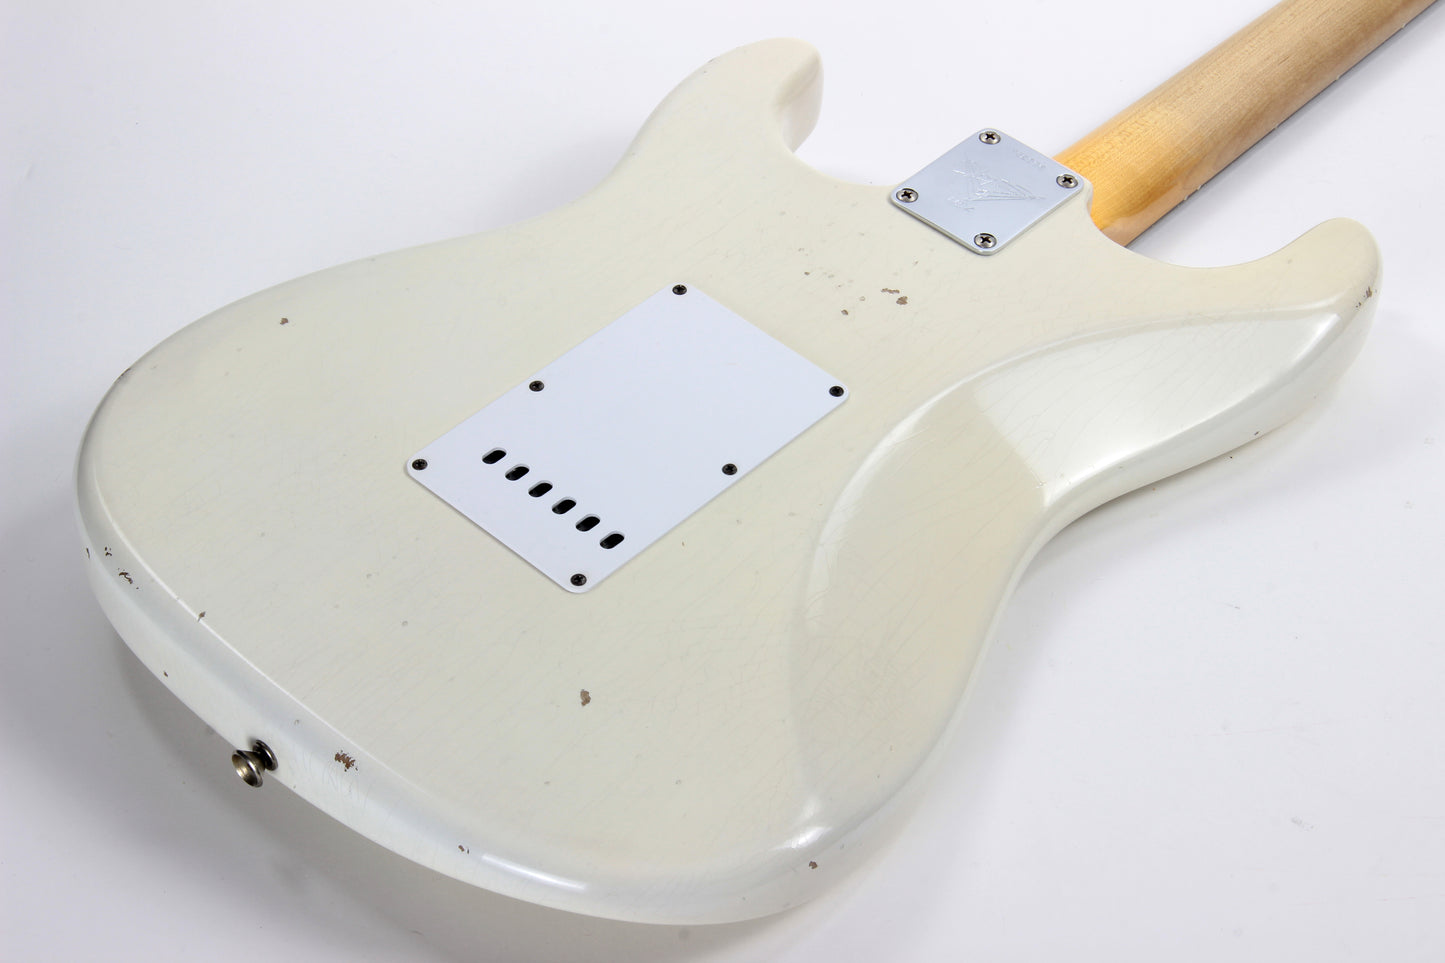 '63 Fender Custom Shop Masterbuilt Builder Select 1963 Stratocaster Relic - Yuriy Shishkov White Strat, Tortoise Guard